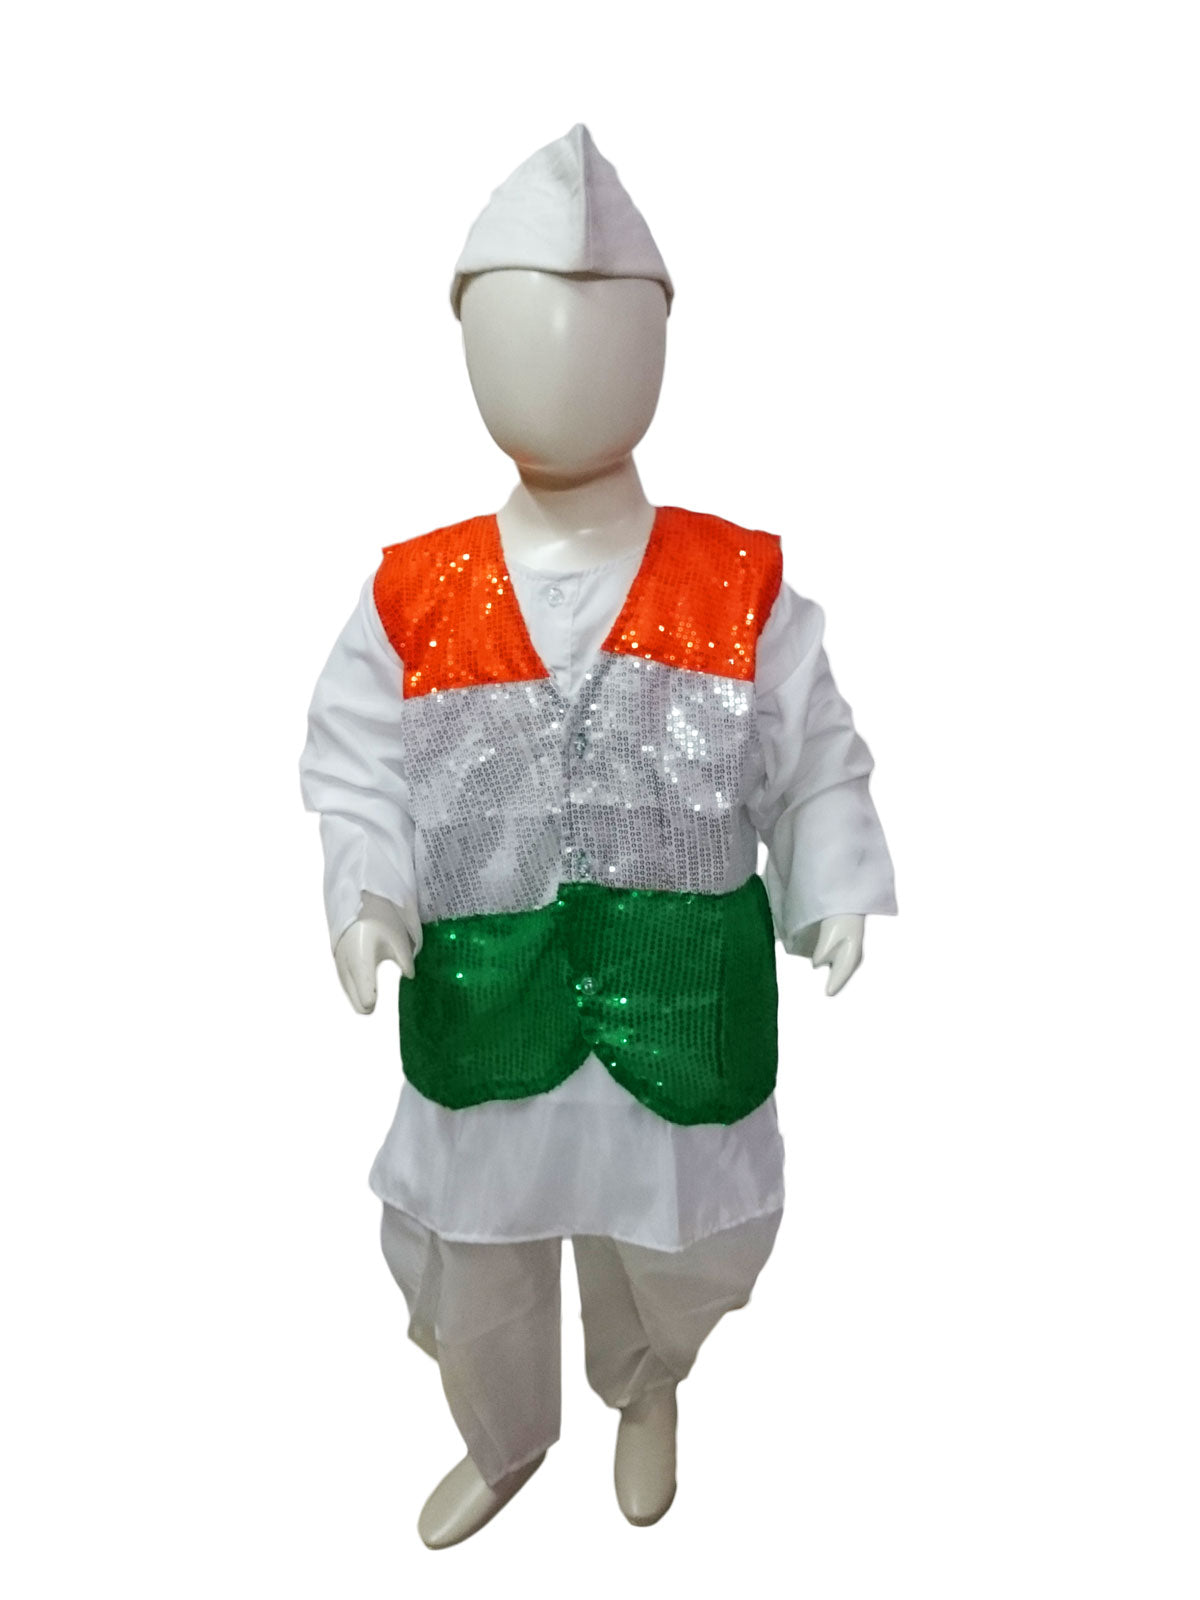 tricolour dress for boy